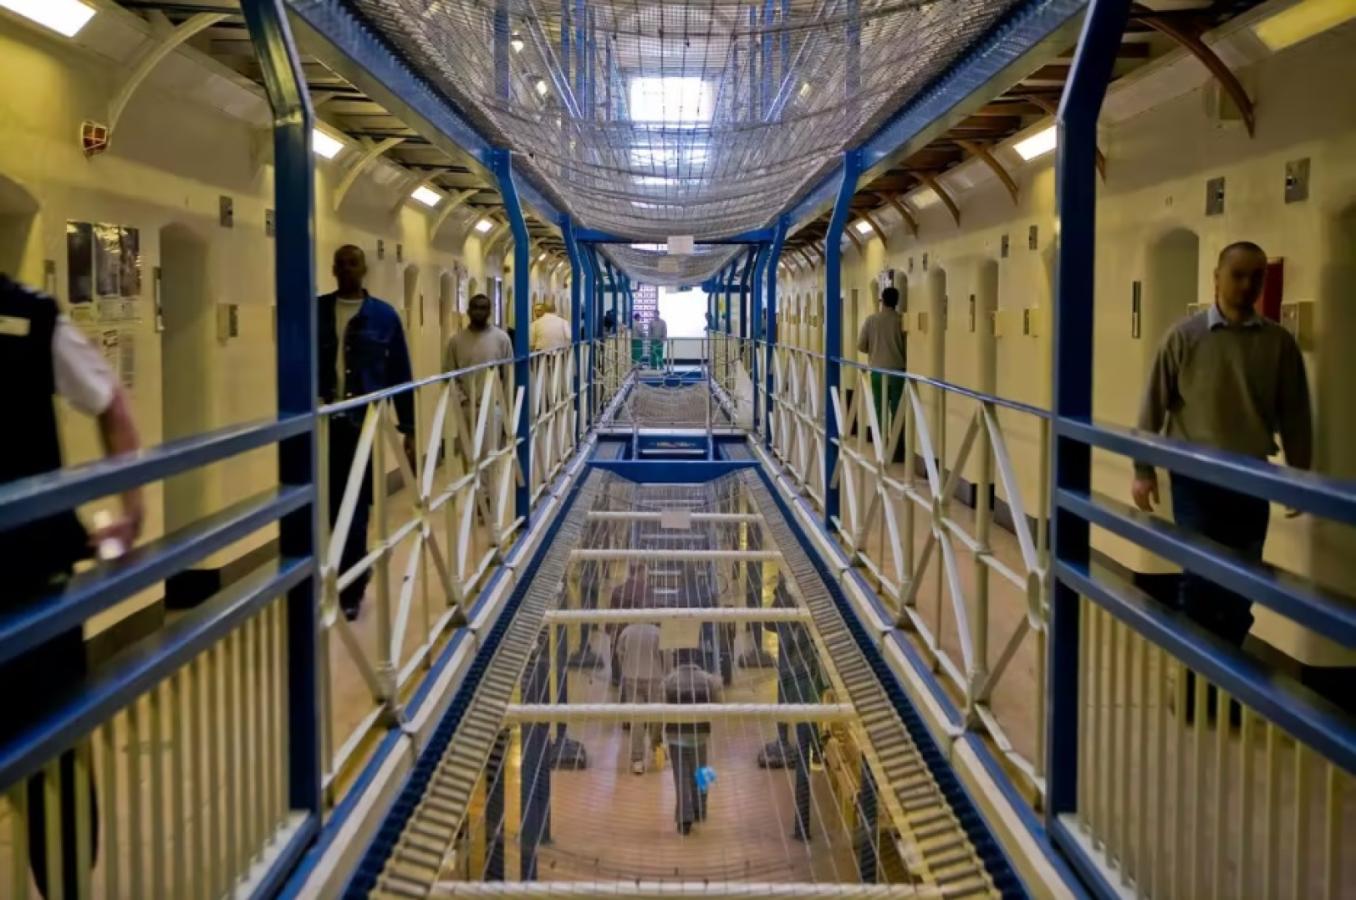 Imagen El interior de la cárcel de Wandsworth, donde se encuentra Boris Becker.